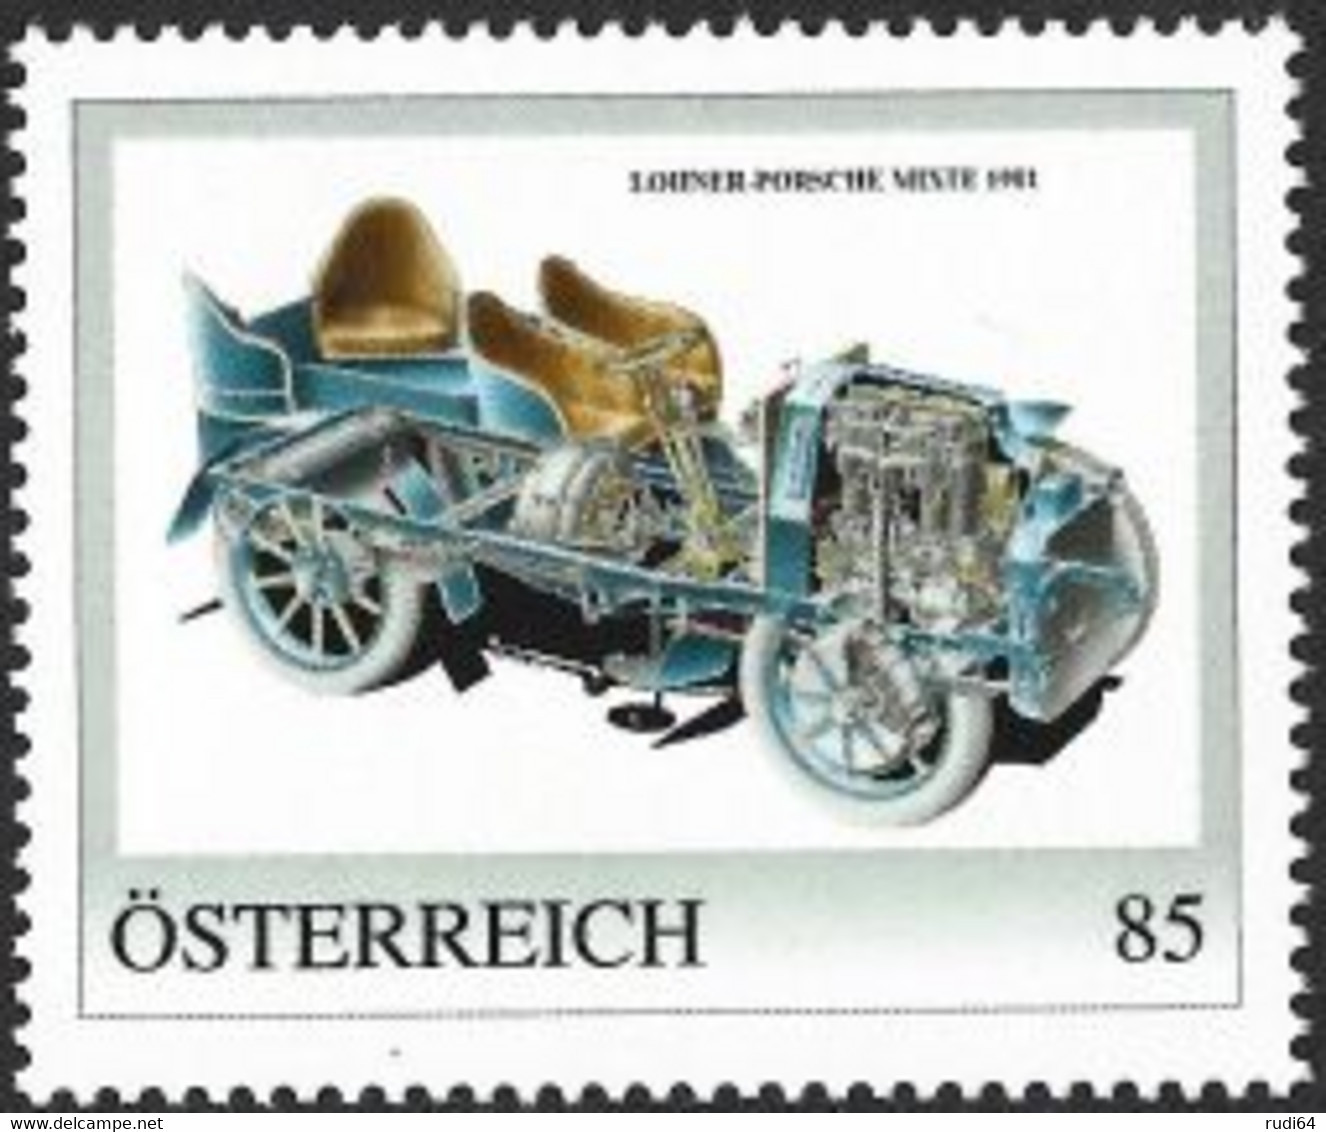 2022 Lohner-Porsche Mixte 1901, Personalisierte Briefmarke 2022, Konstruktion Von Ferdinand Porsche, 85 Cent, Automobile - Ongebruikt